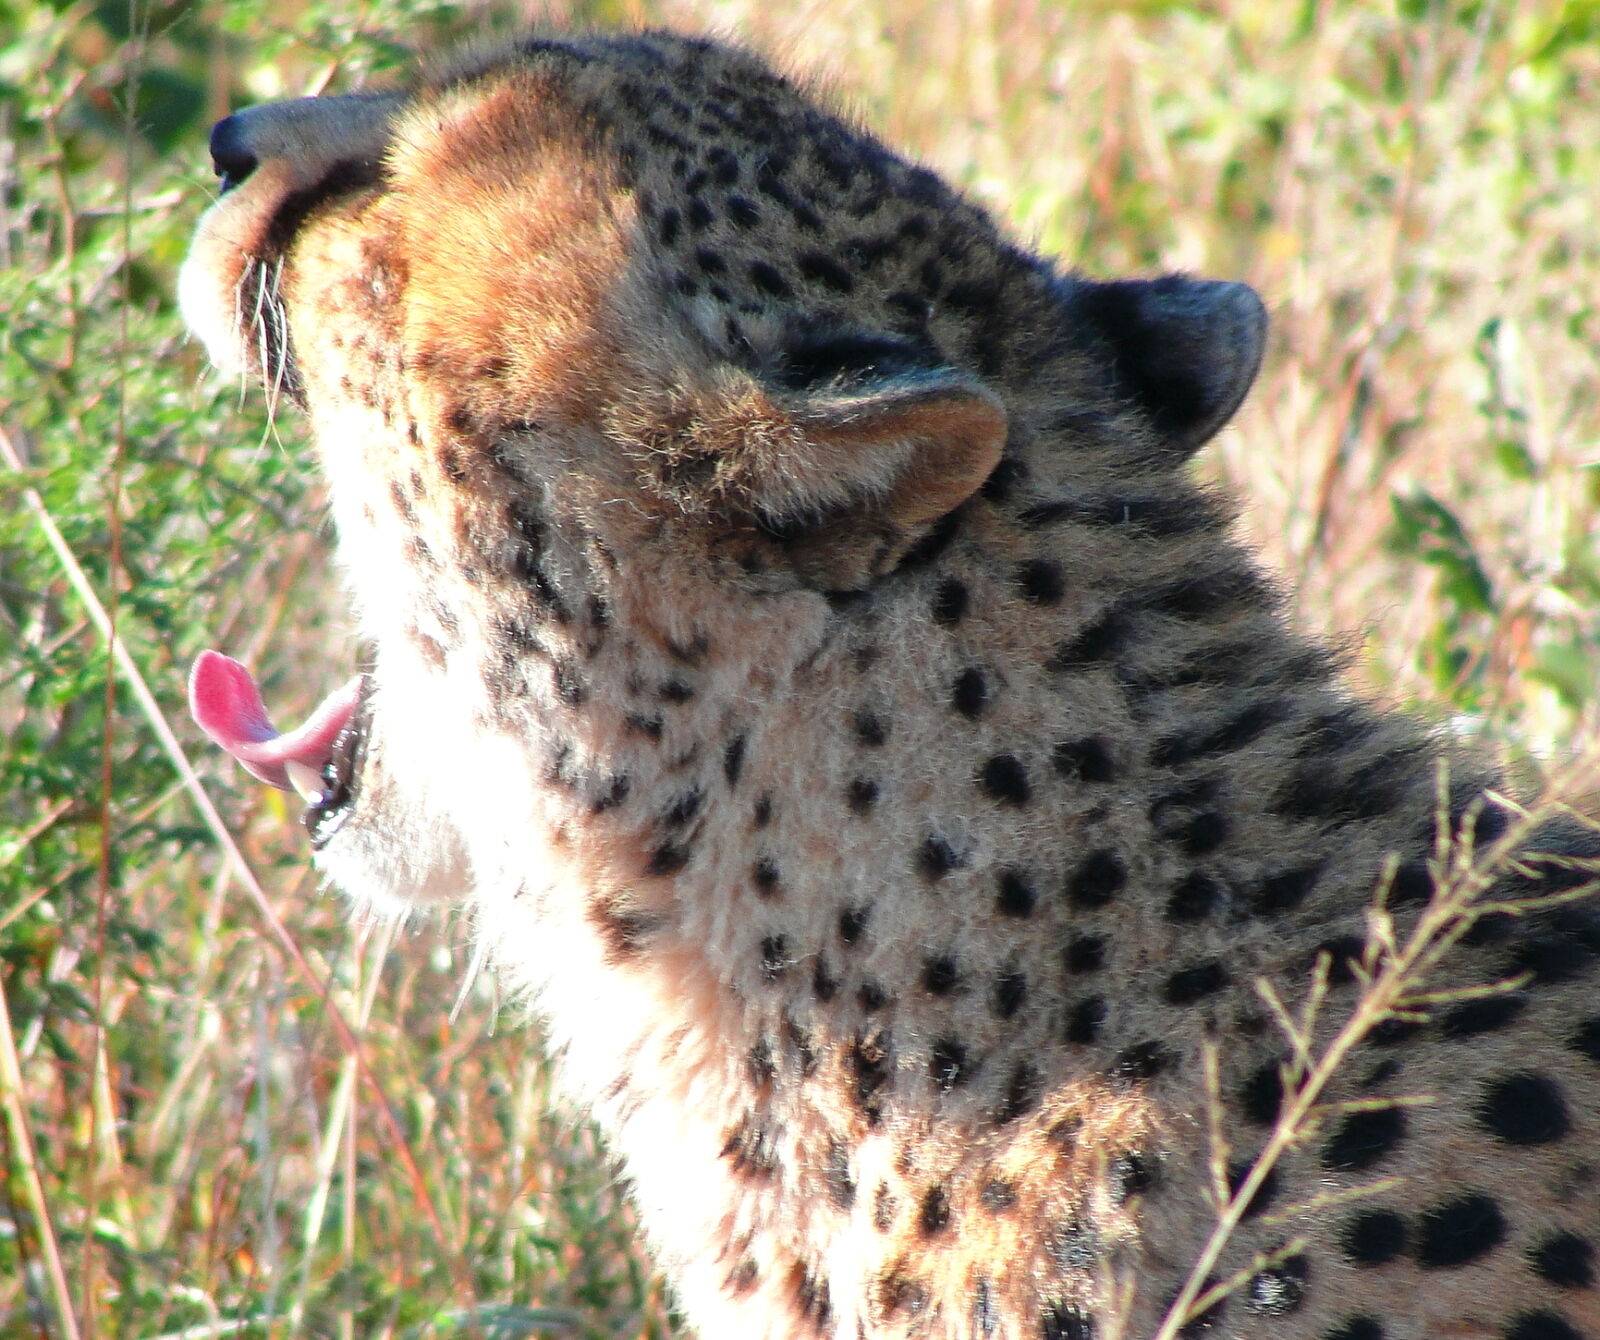 Sony Cyber-shot DSC-H20 sample photo. Africa, cheetah, safari, wild photography